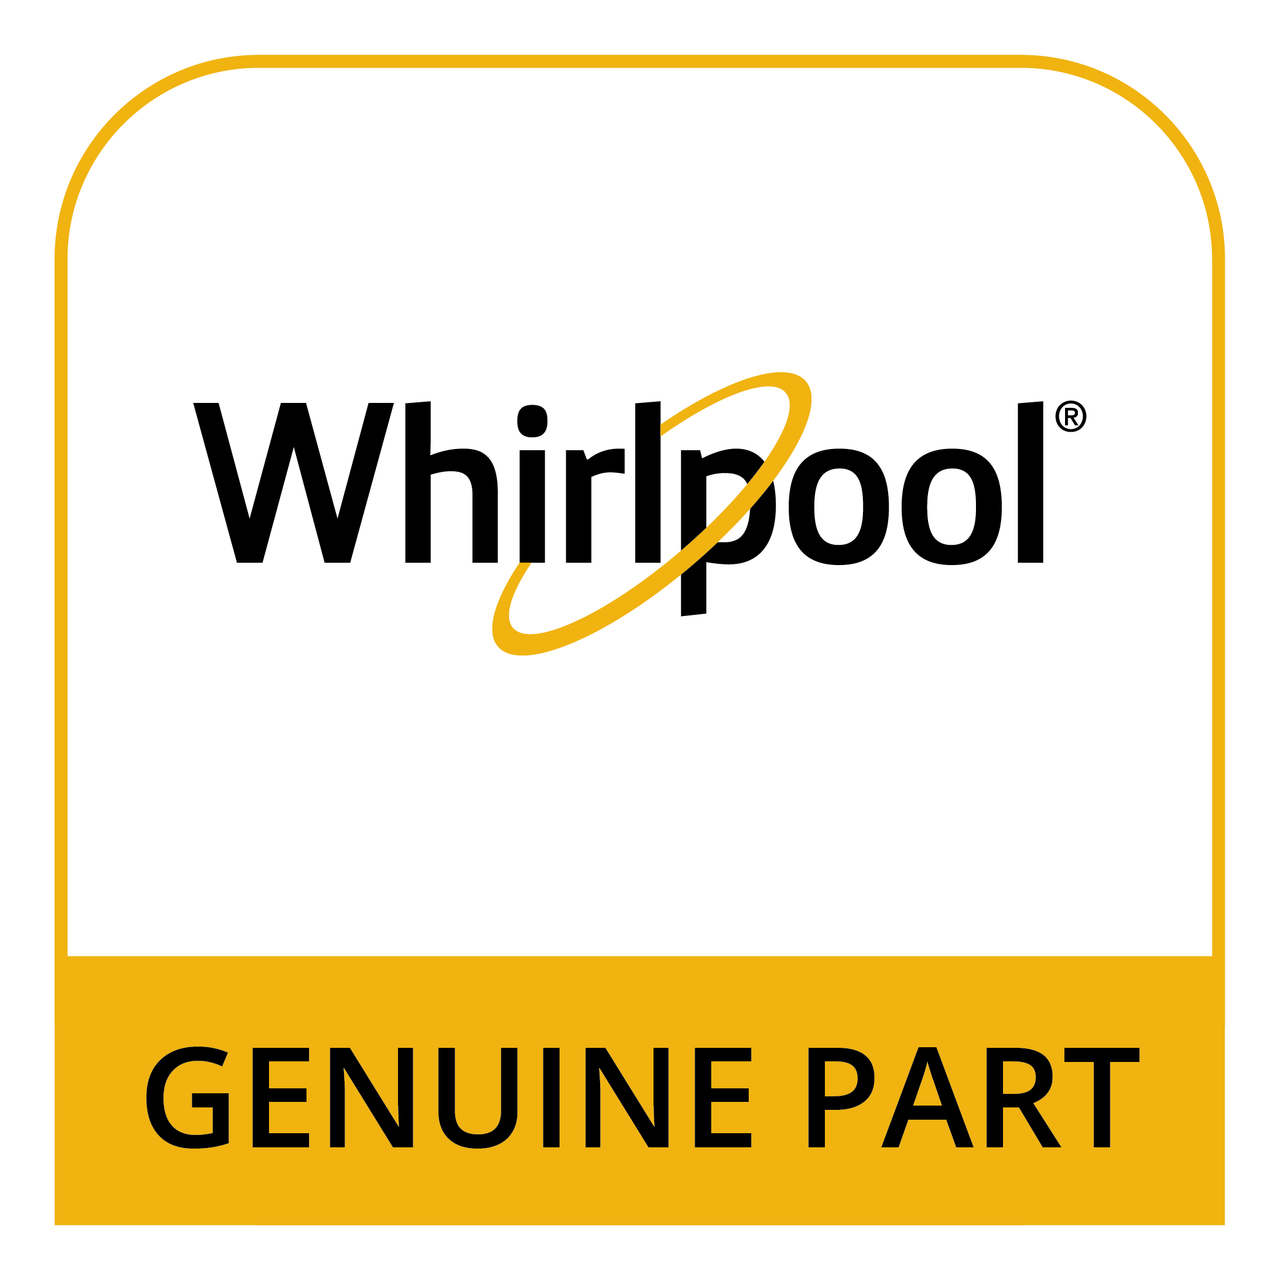 Whirlpool WFR802232 - 81,120 Blw *Non-Wise* - Genuine Part